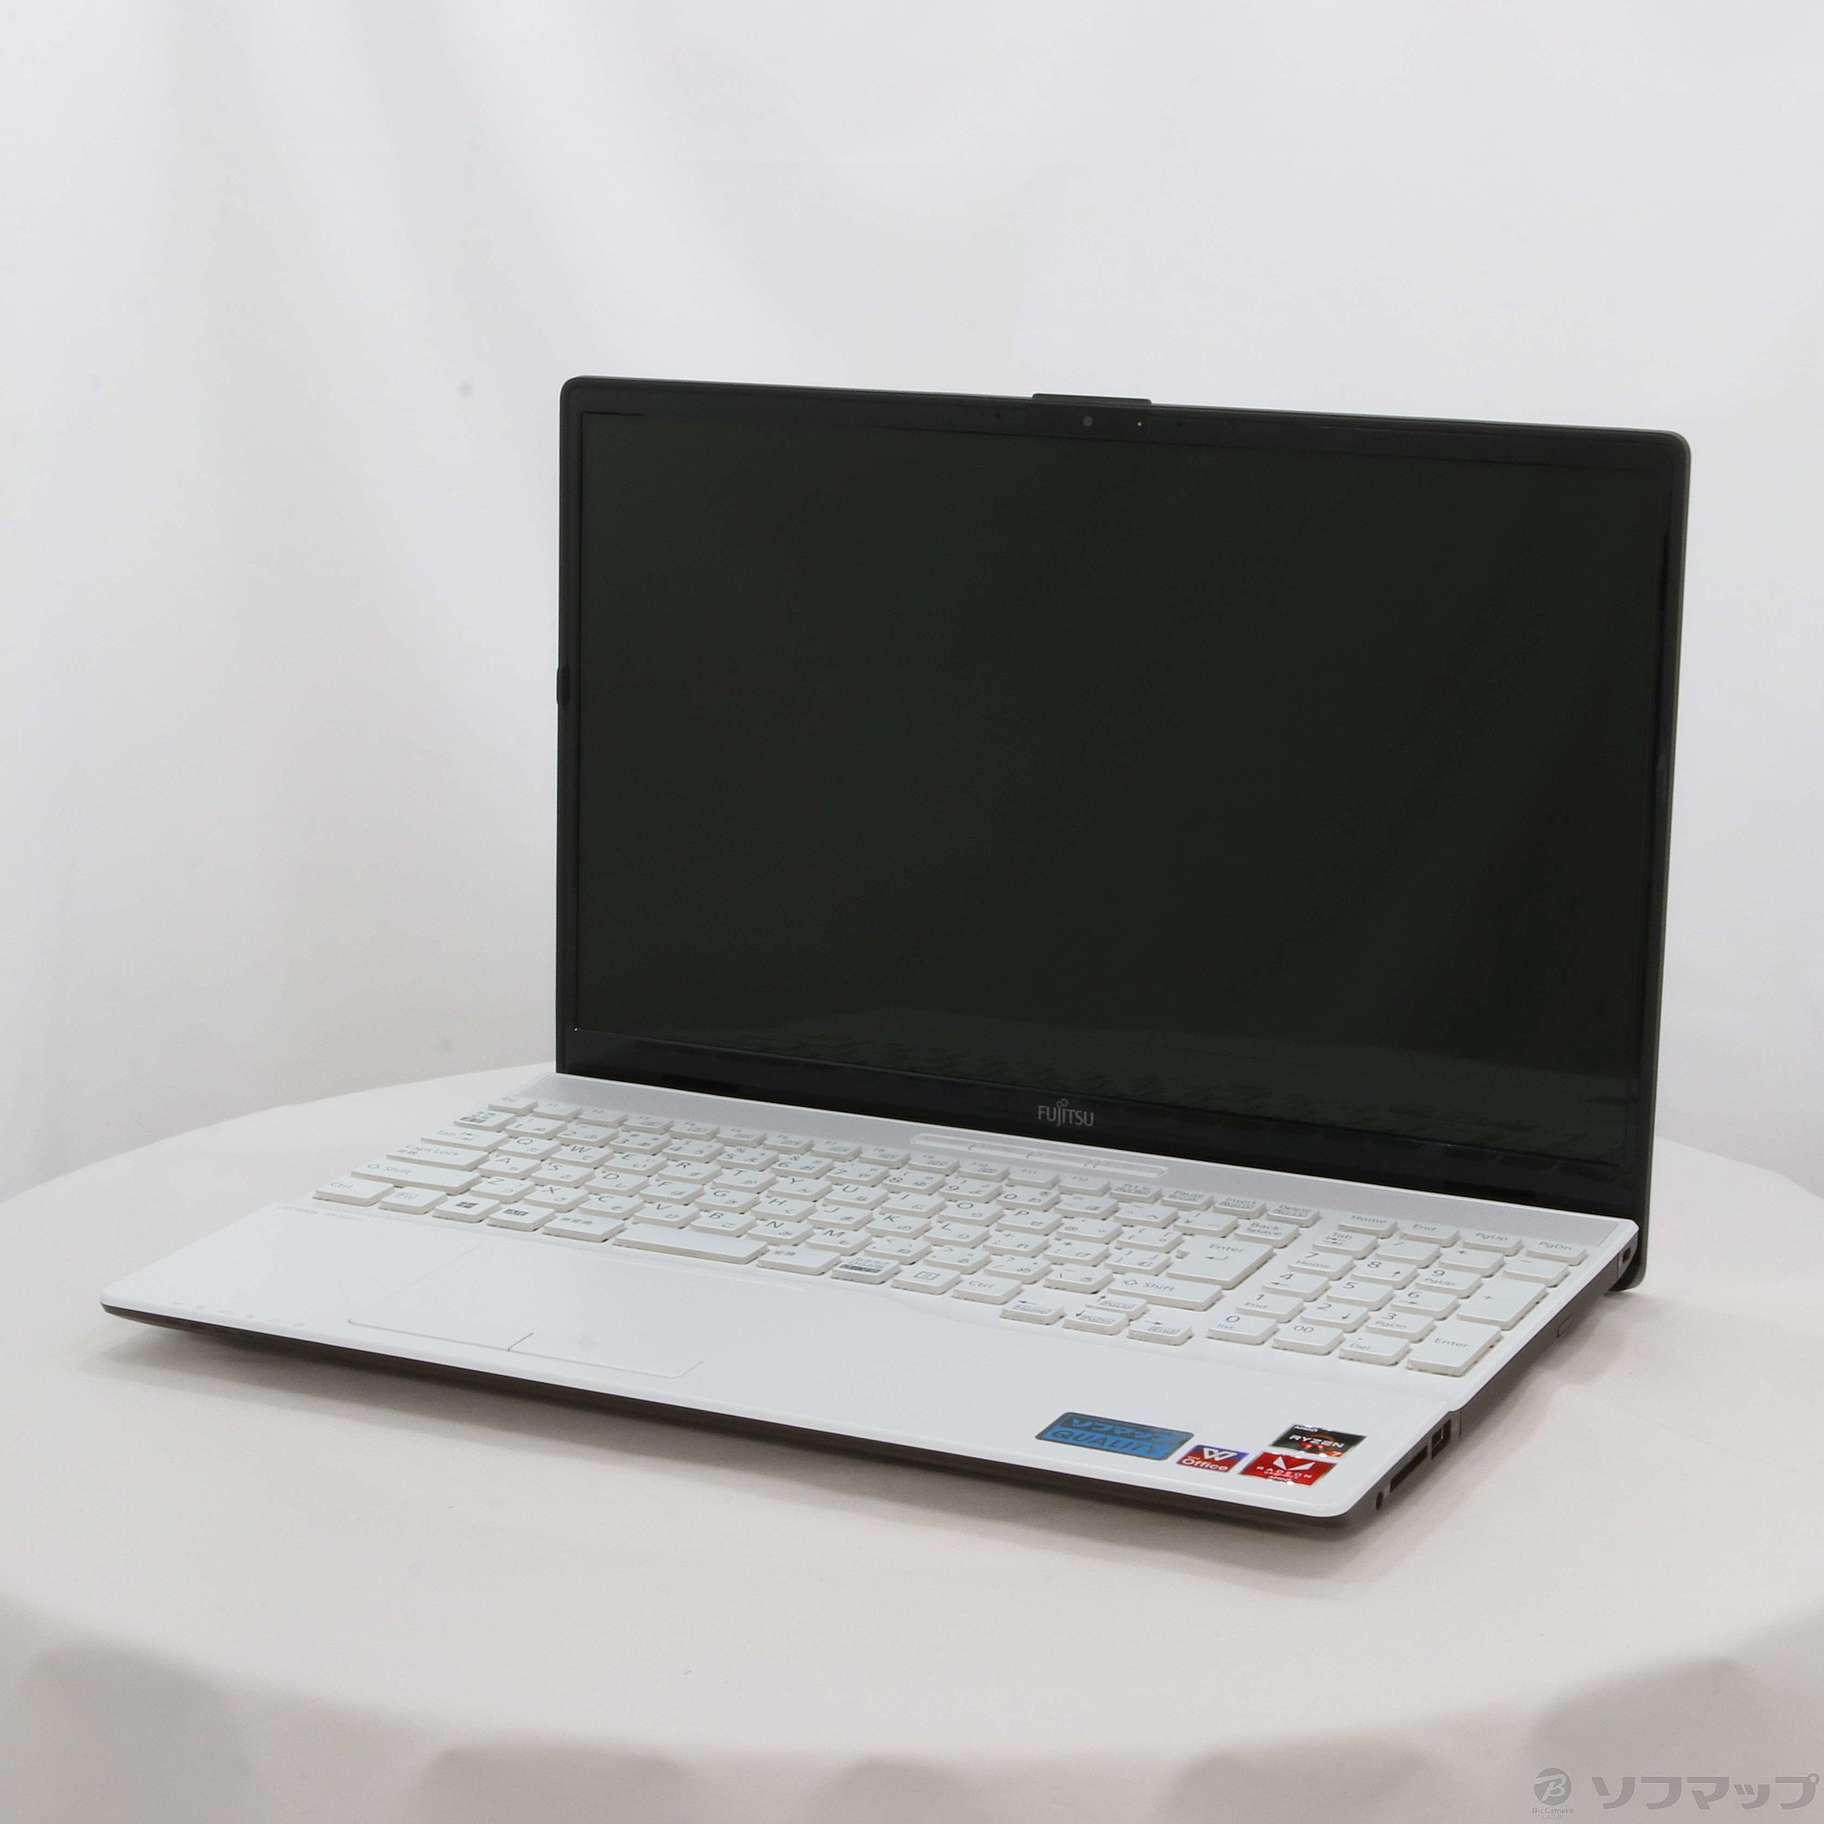 富士通 Lifebook S936 (6600U, 512 GB) PalmSecure 笔记本电脑简短评测 - Notebookcheck